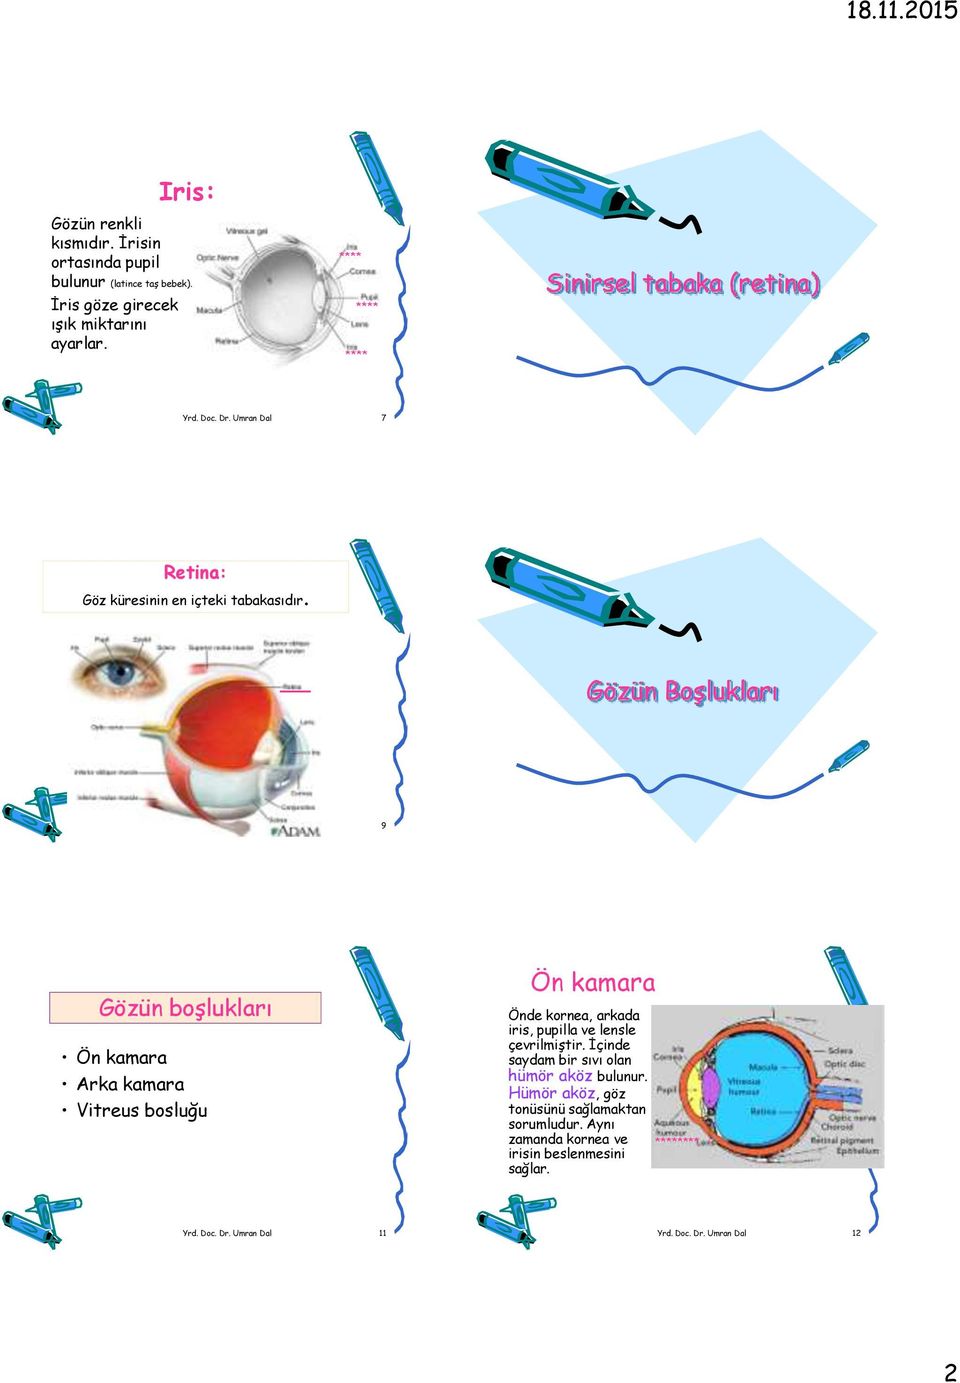 Umran Dal 7 Retina: Göz küresinin en içteki tabakasıdır. Gözün Boşlukları Yrd. Doc. Dr.